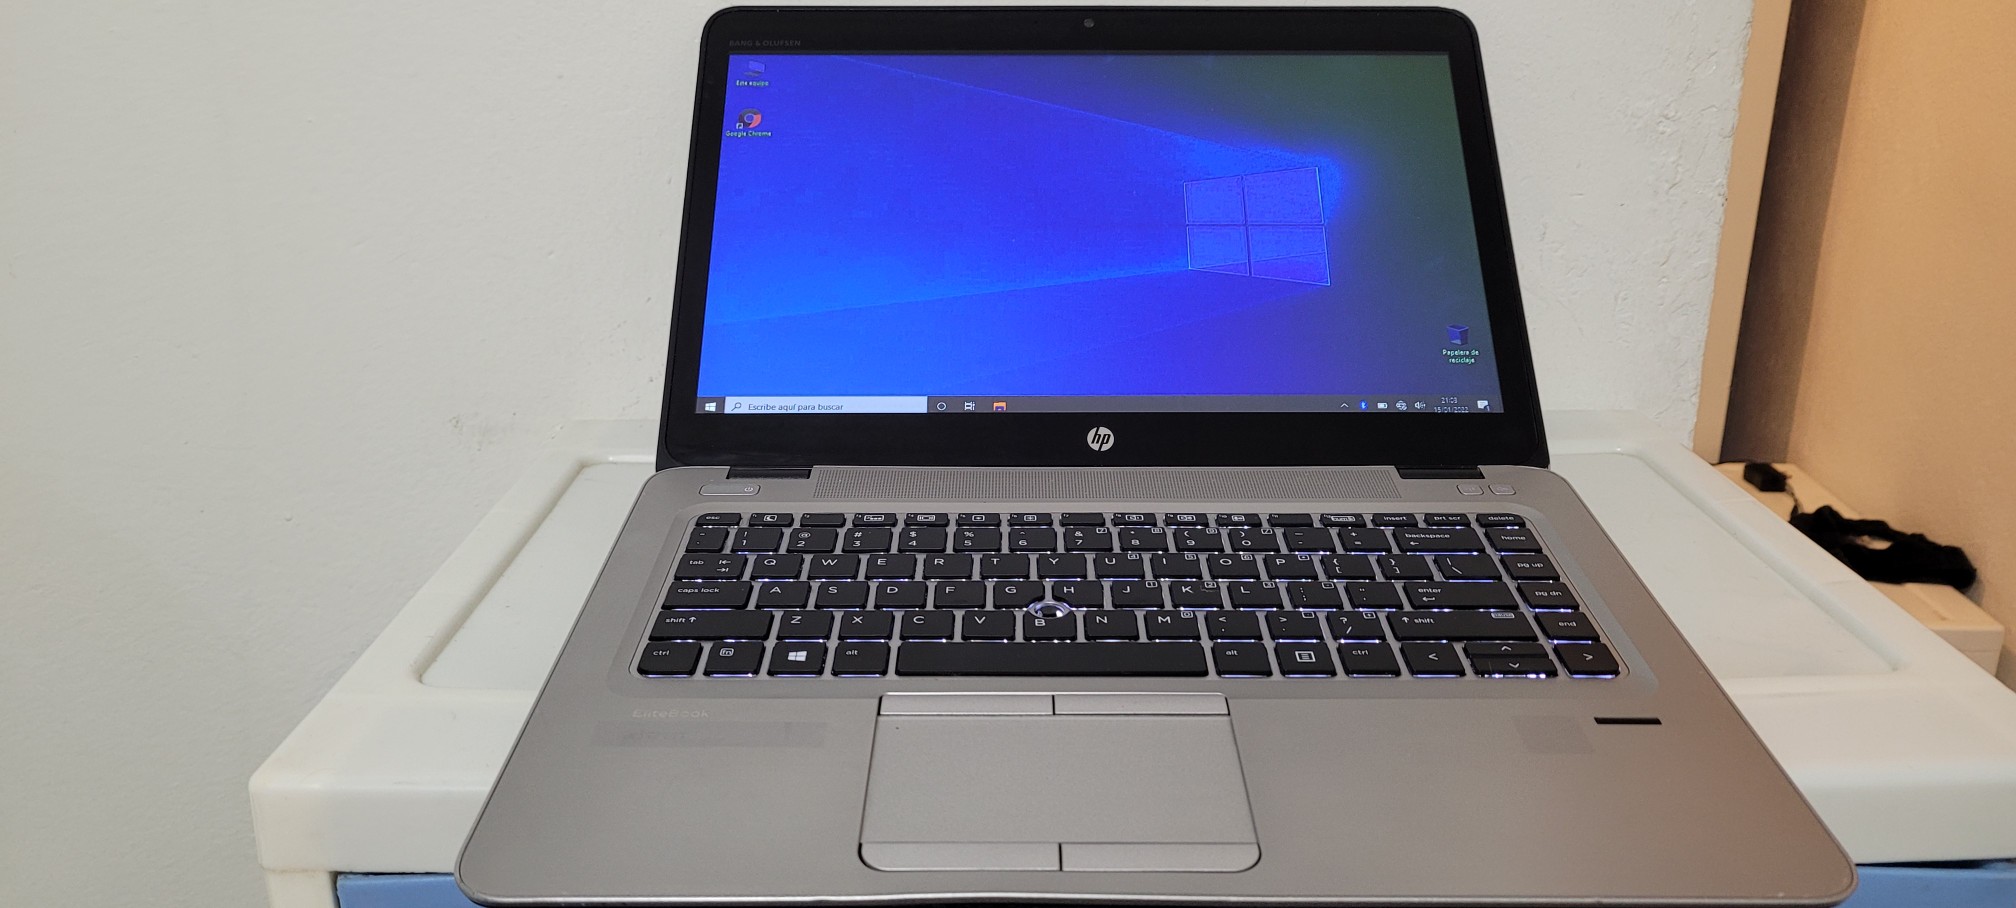 computadoras y laptops - Laptop hp Slim G3 14 Pulg Core i5 6ta Gen Ram 8gb ddr4 Disco 500gb Full